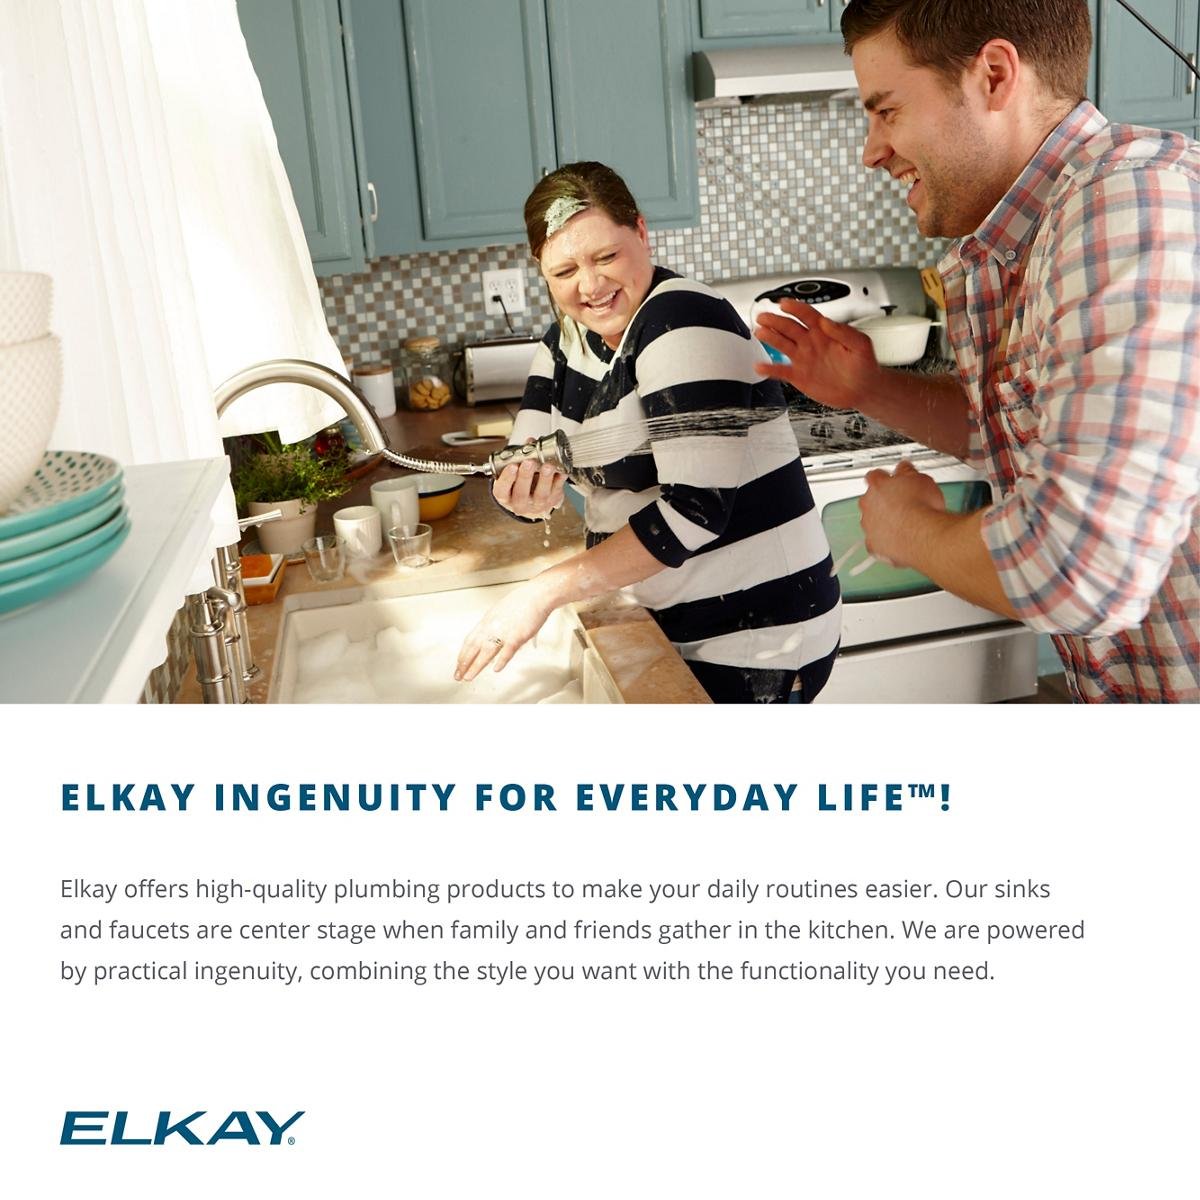 Elkay EFU321910 Avado Double Bowl Undermount Stainless Steel Sink